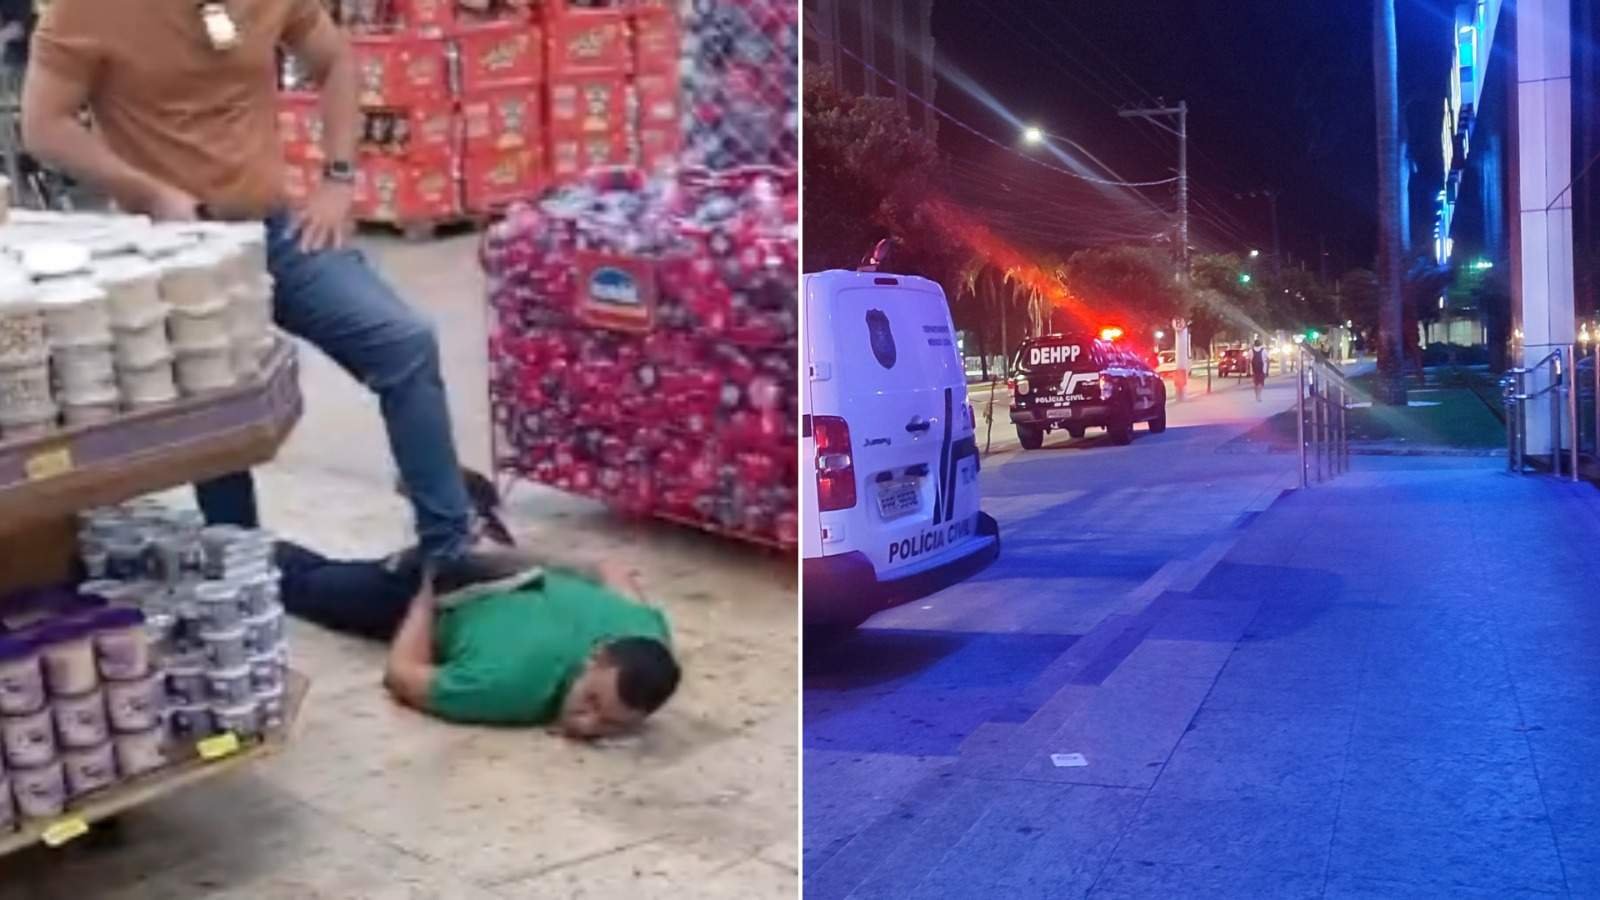 Jovem morto a facadas após briga dentro de supermercado em Vitória